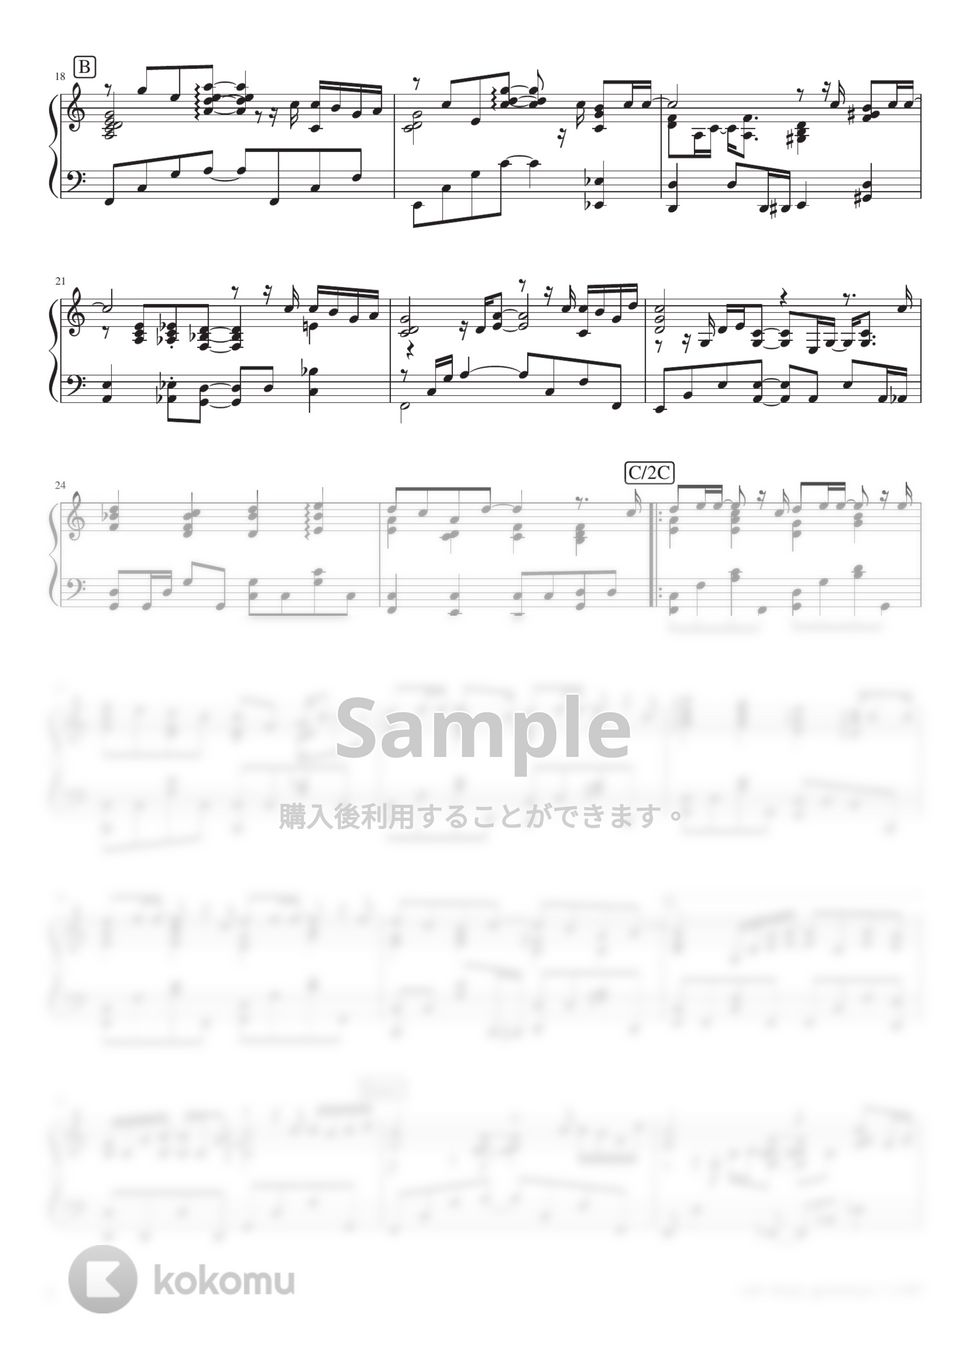 におP - rain stops, good-bye (PianoSolo) by 深根 / Fukane